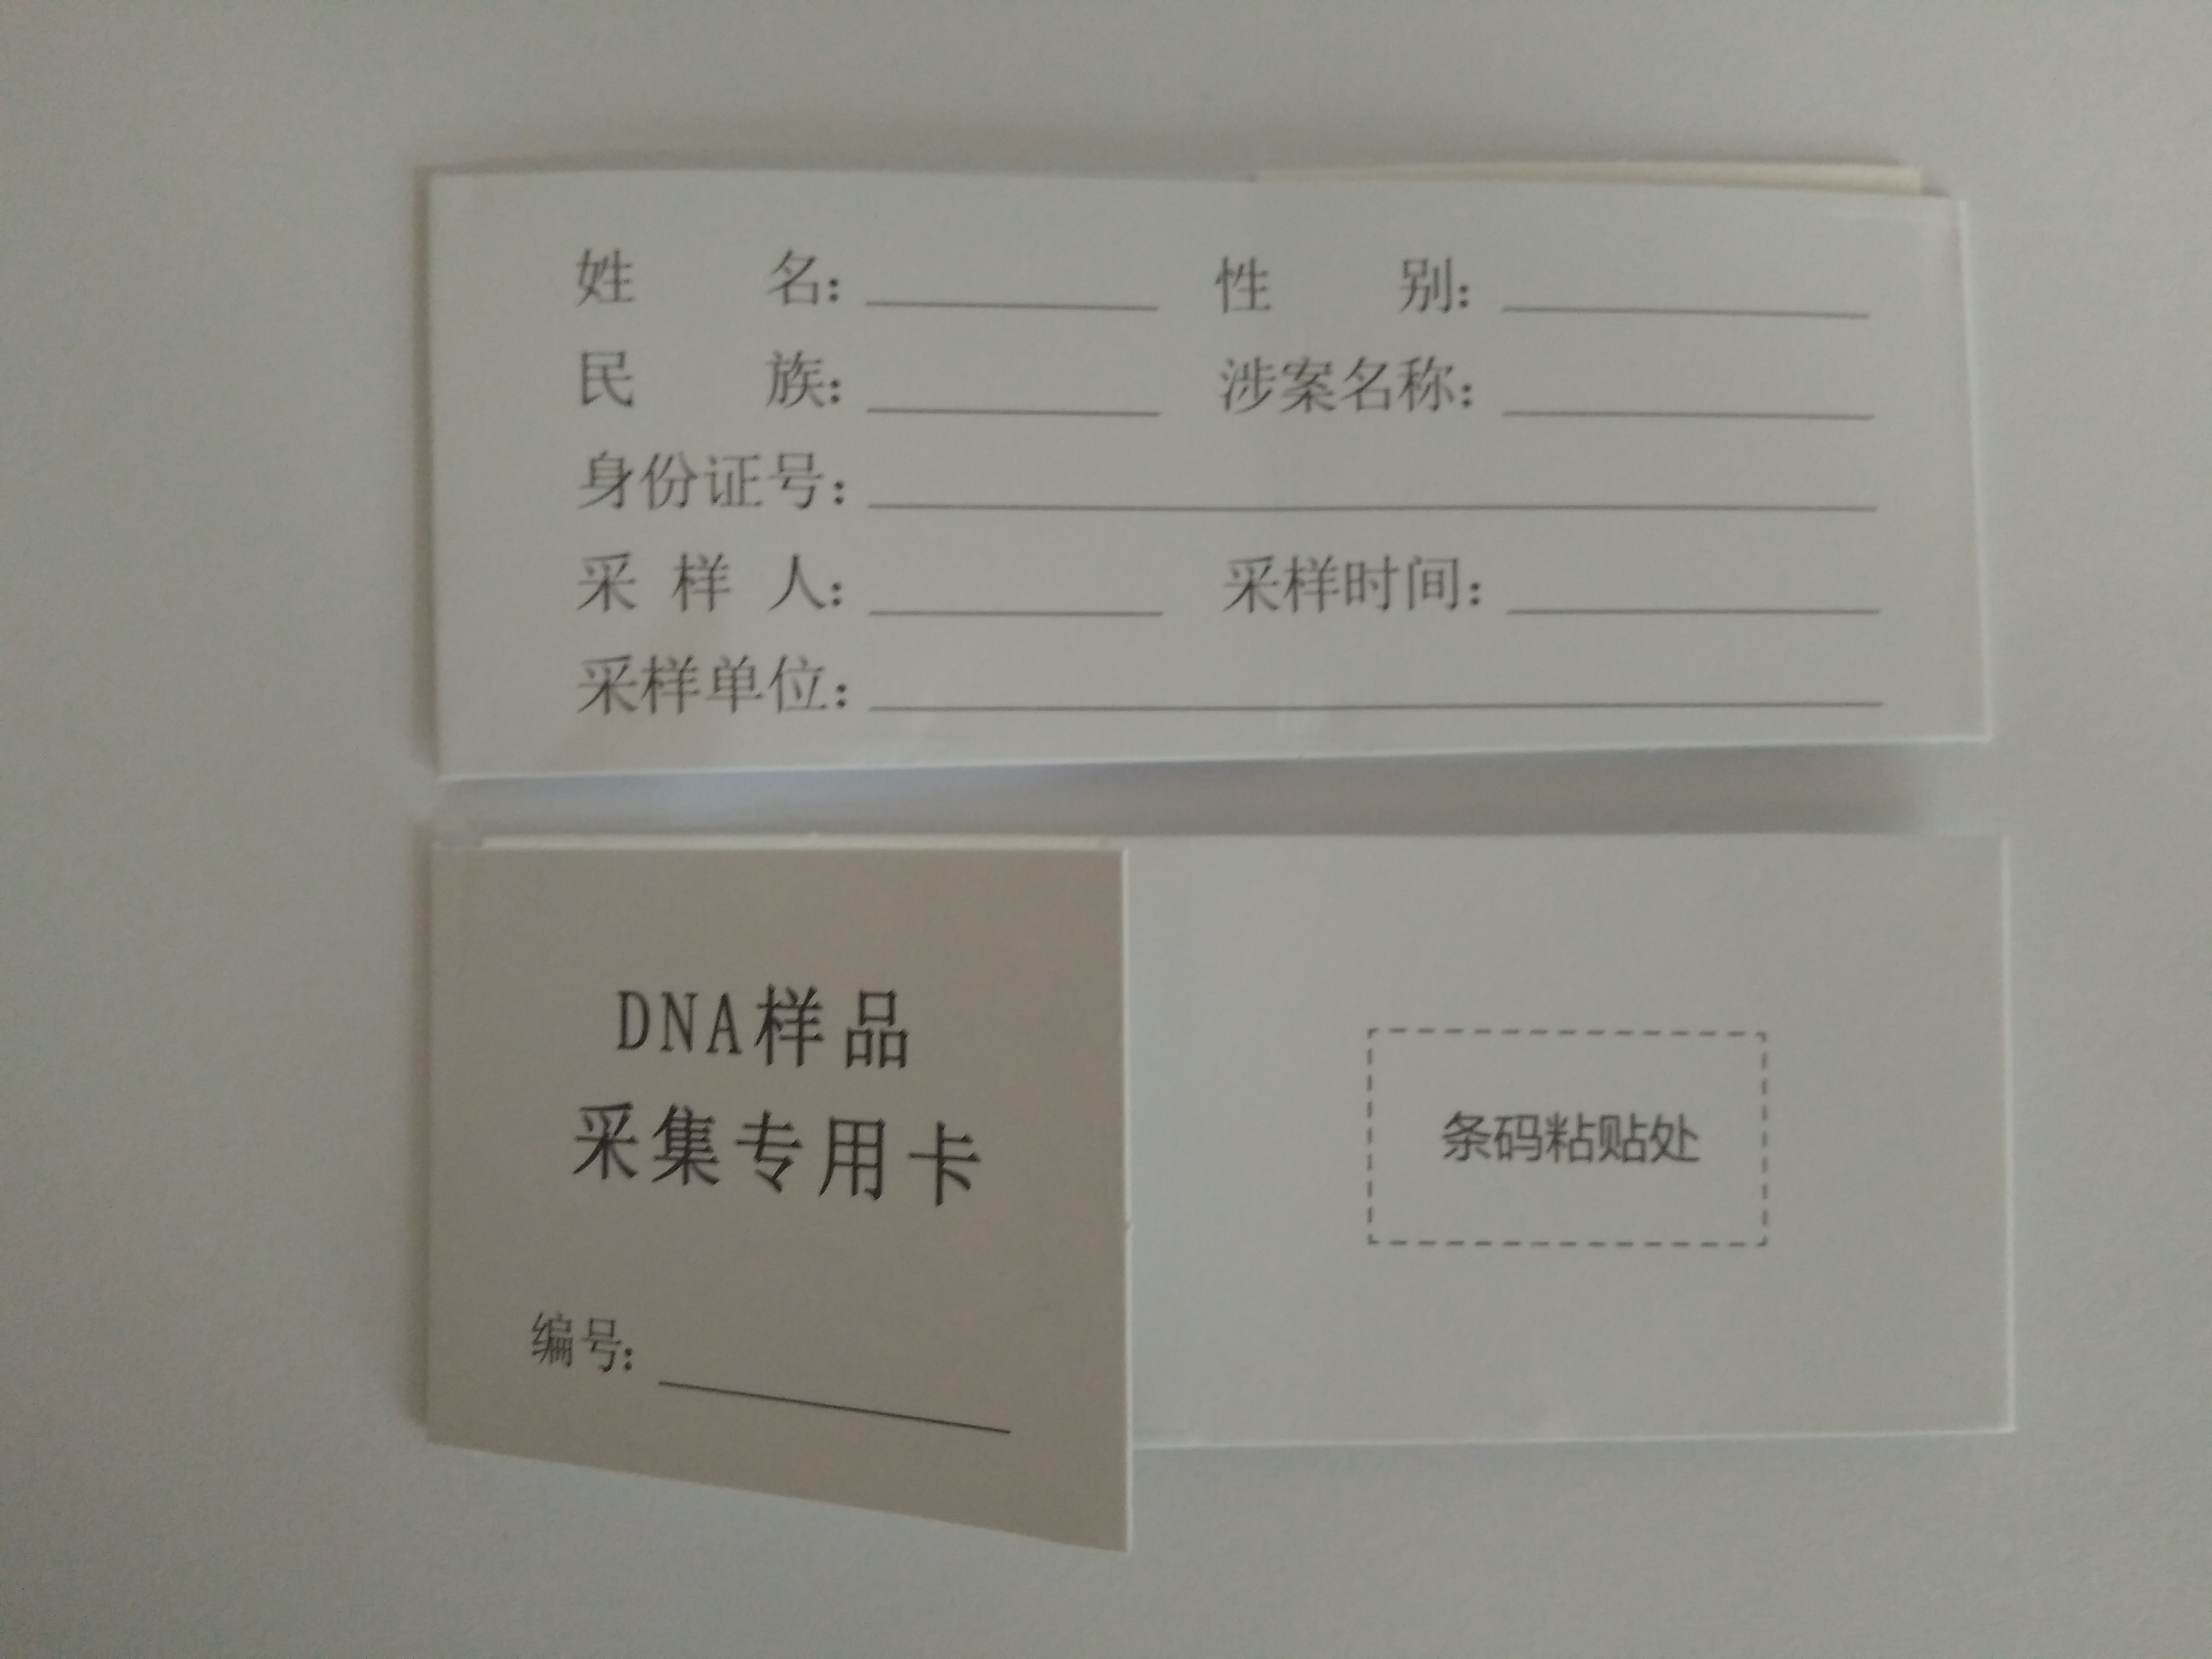 DNA血样采集卡 dna采血卡 样品采集卡 50份三件套装 血液存储卡